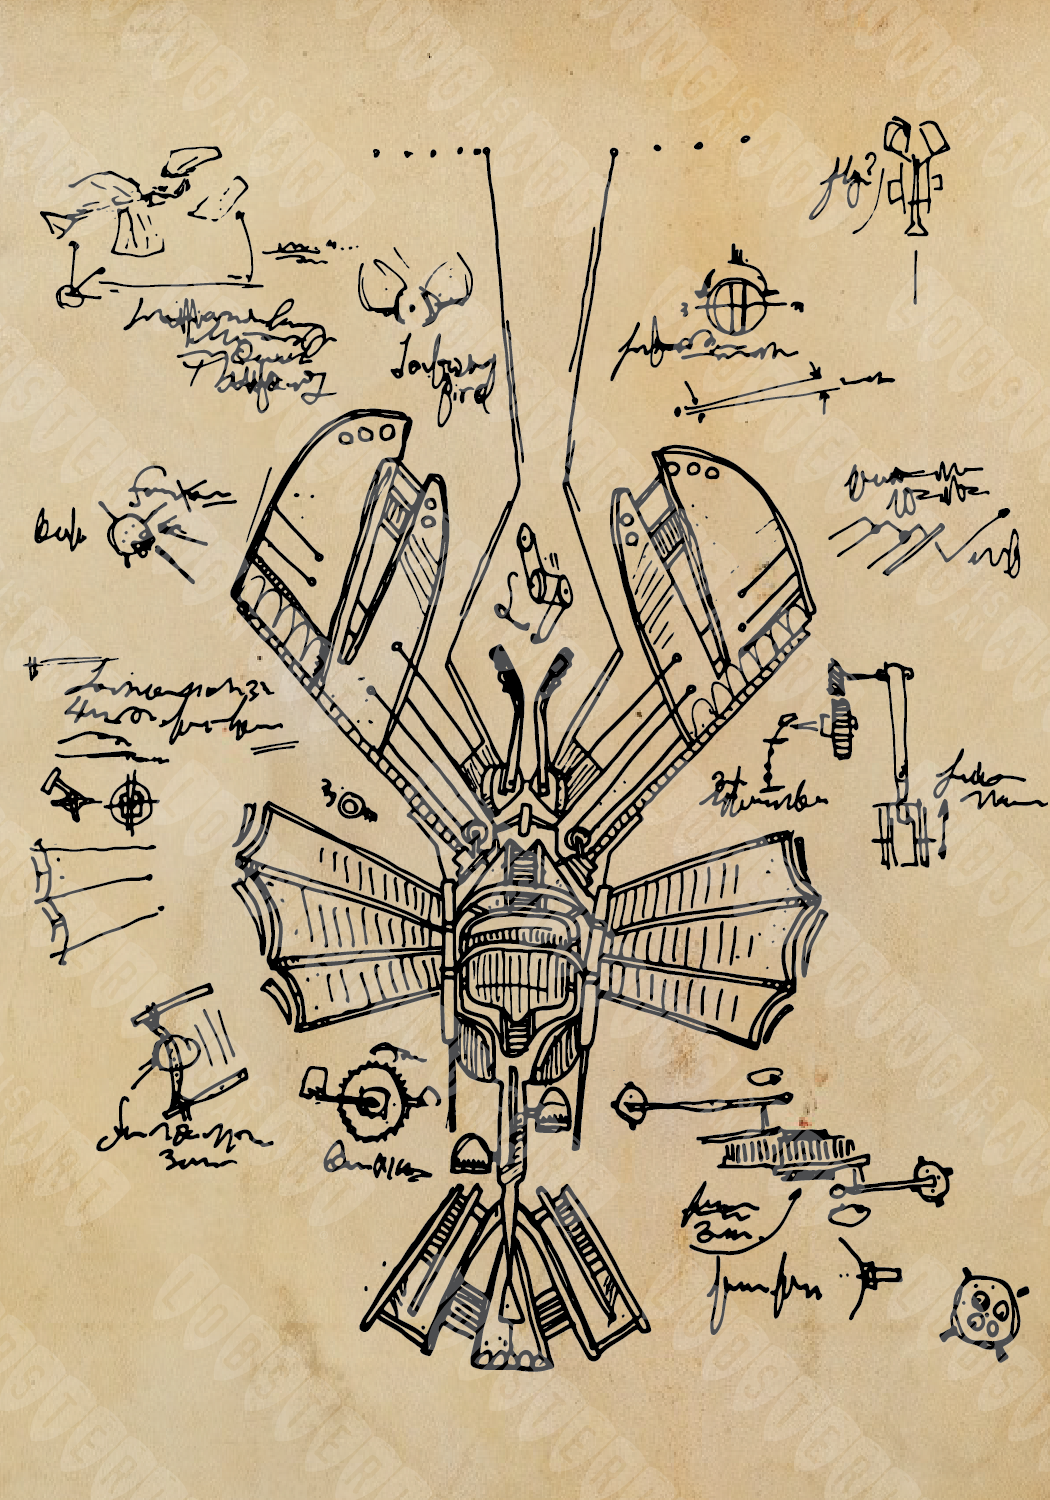 "Da Vinci's Flying Lobster"